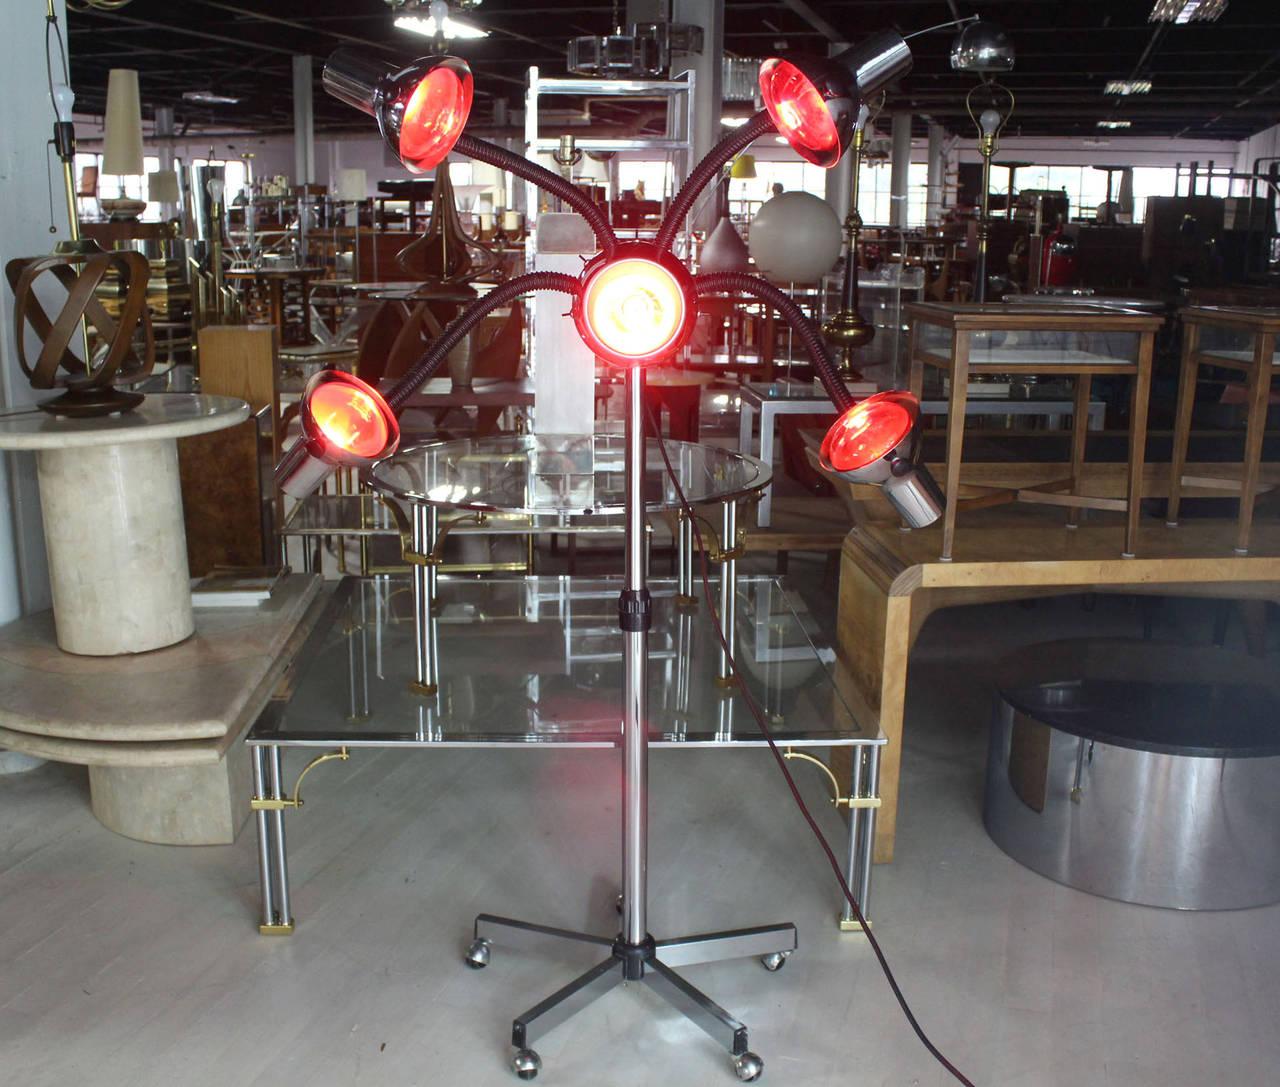 Sehr ungewöhnlich Mid-Century Modern Chrom Basis vier flexible Arme Lampe. Derzeit mit fünf roten Glühbirnen ausgestattet.